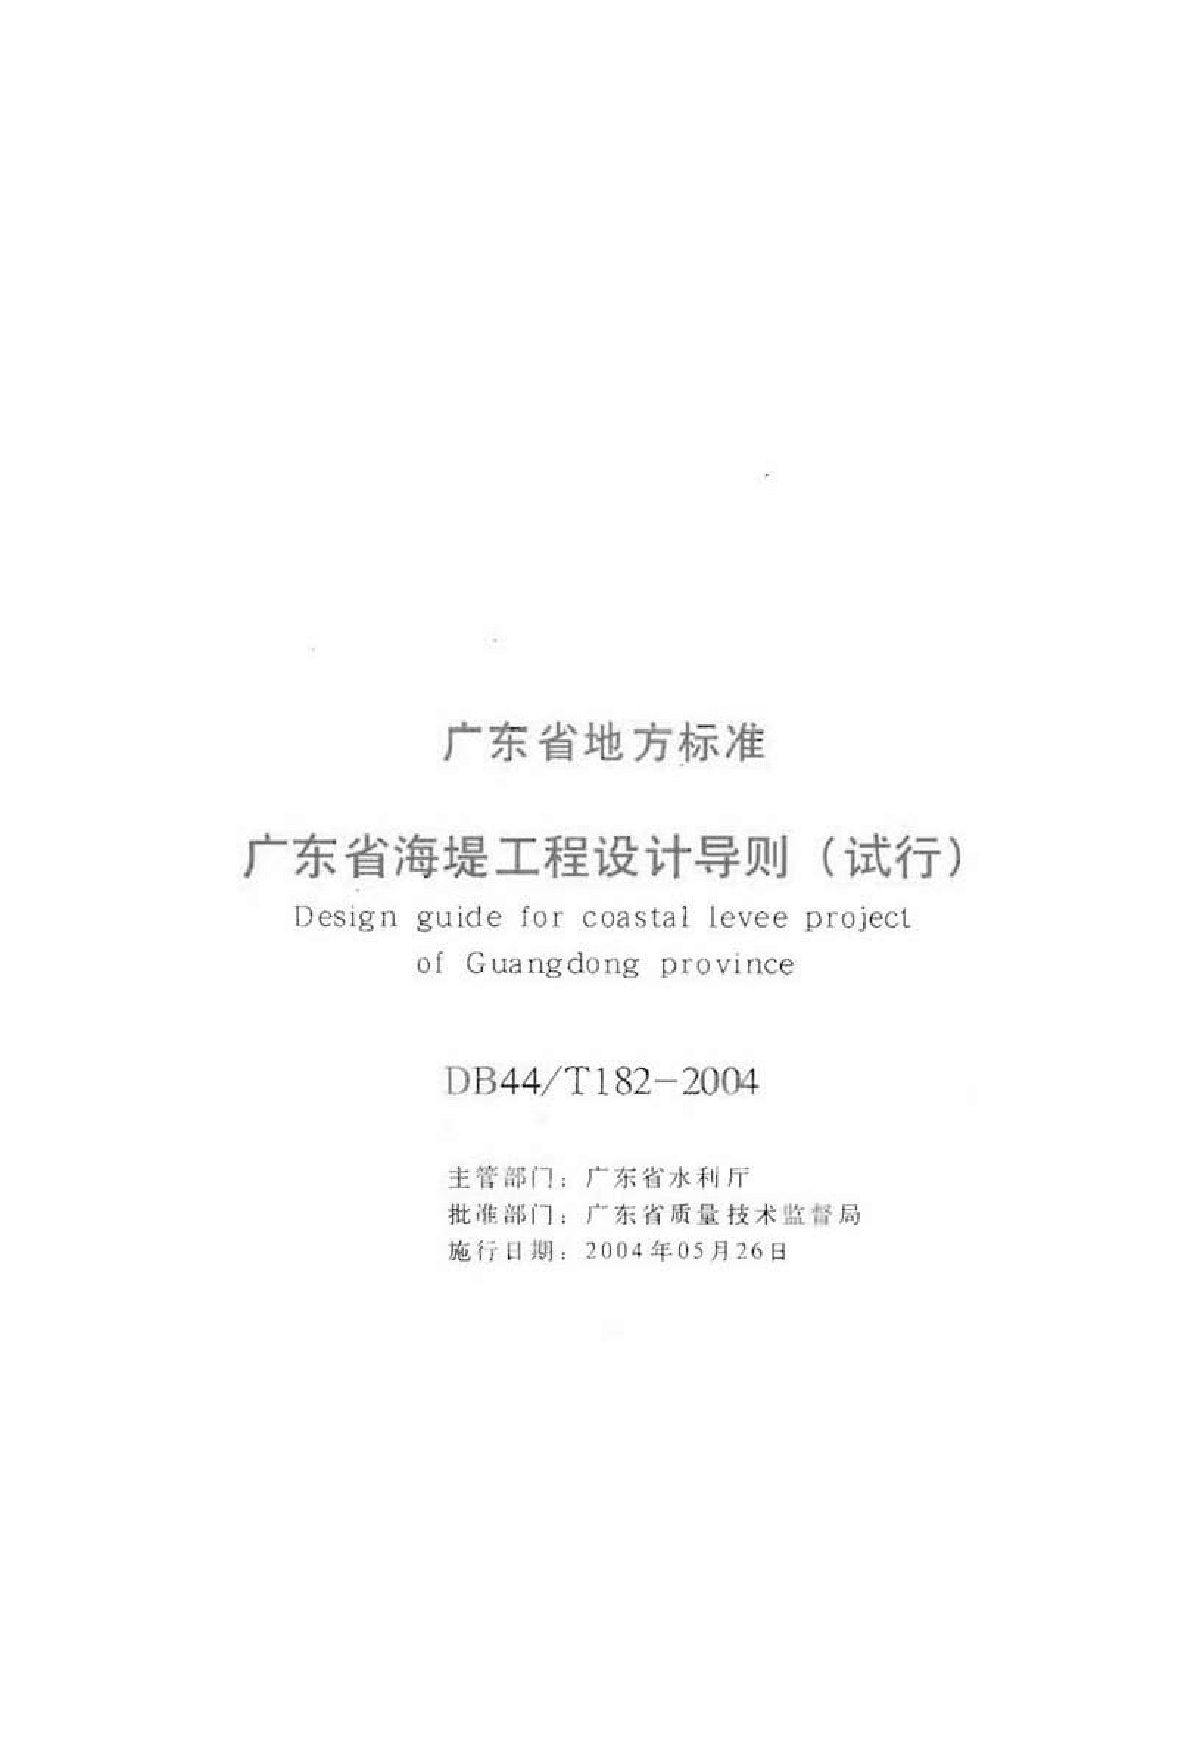 《广东省海堤工程设计导则》(试行)(DB44∕T182-2004)-图二